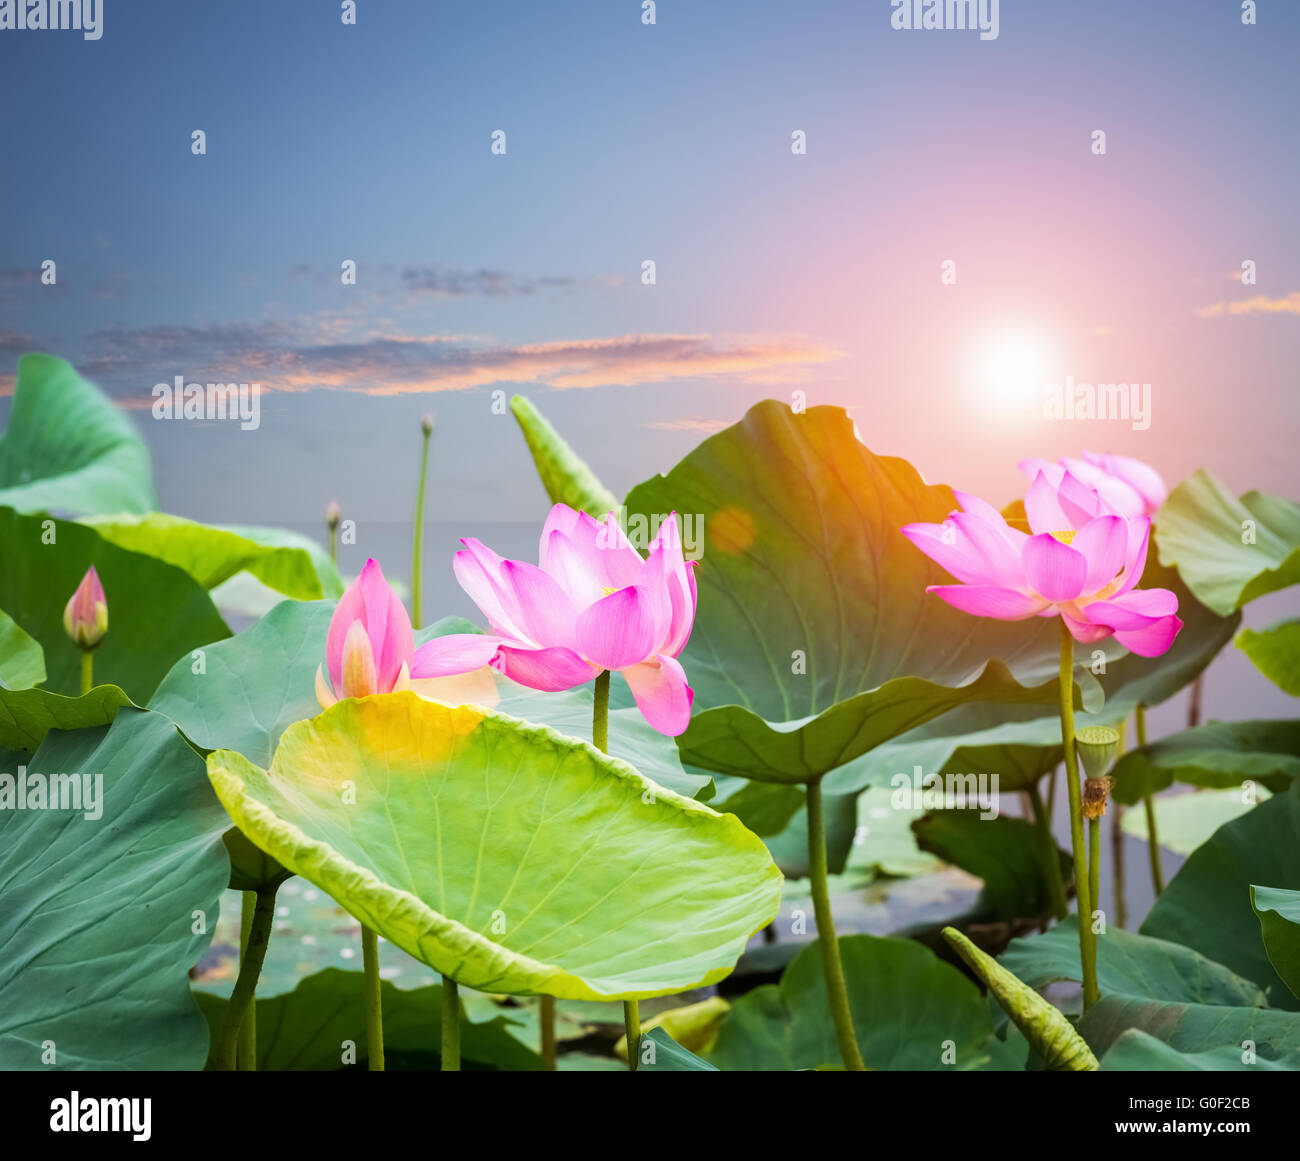 Fiore di loto in fiore nel tramonto Foto Stock